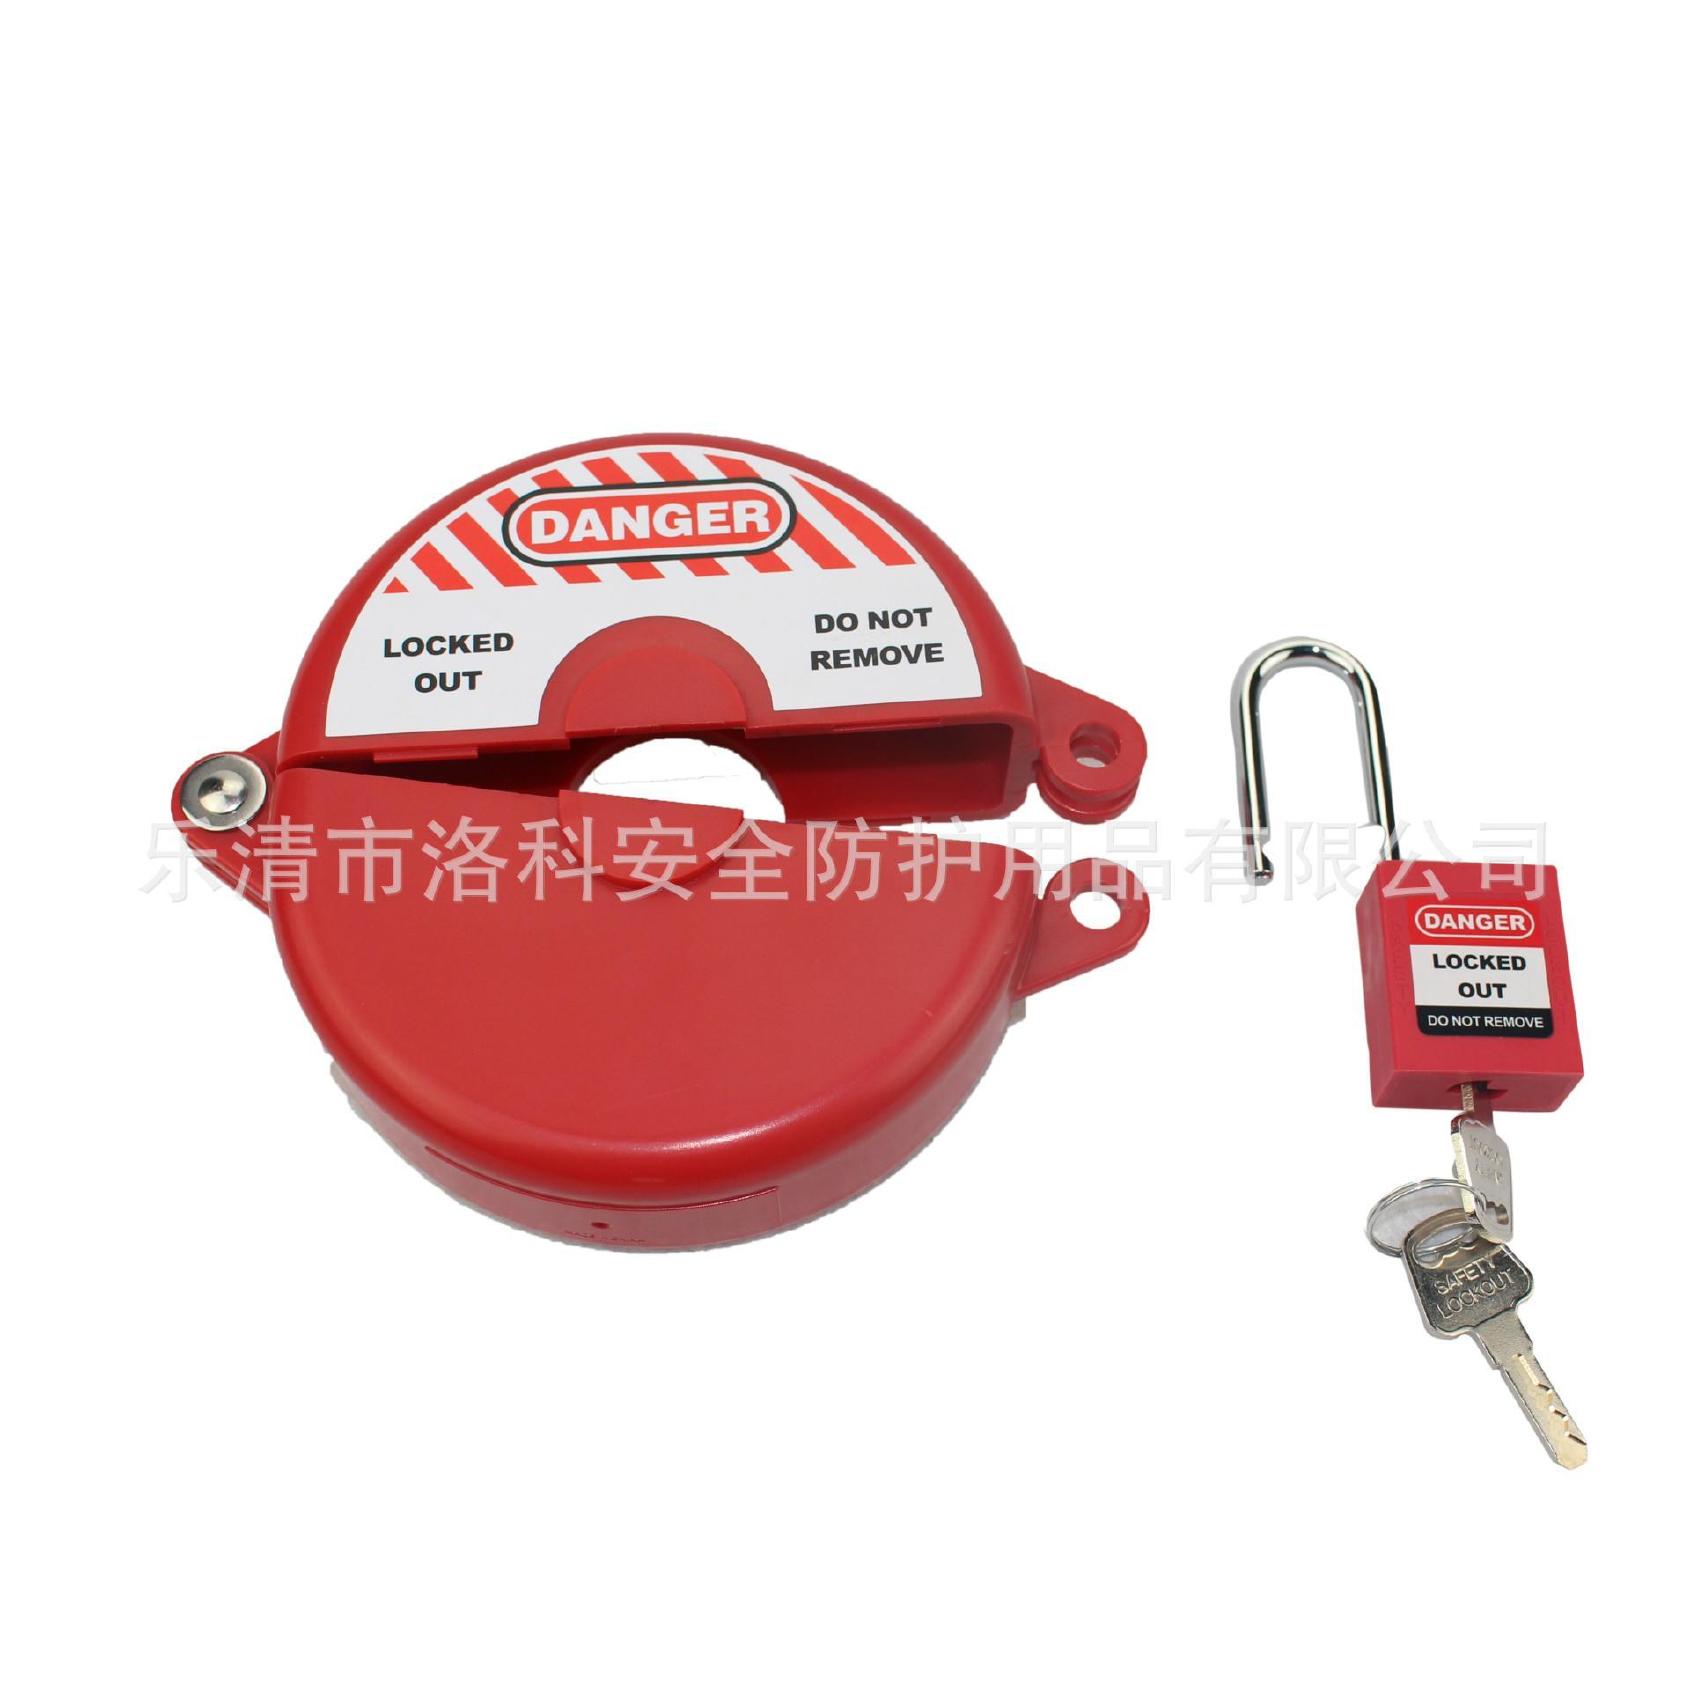 工程塑料安全圆盘锁具 适用127~165mm工业锁具 标准阀门煤气锁具示例图2